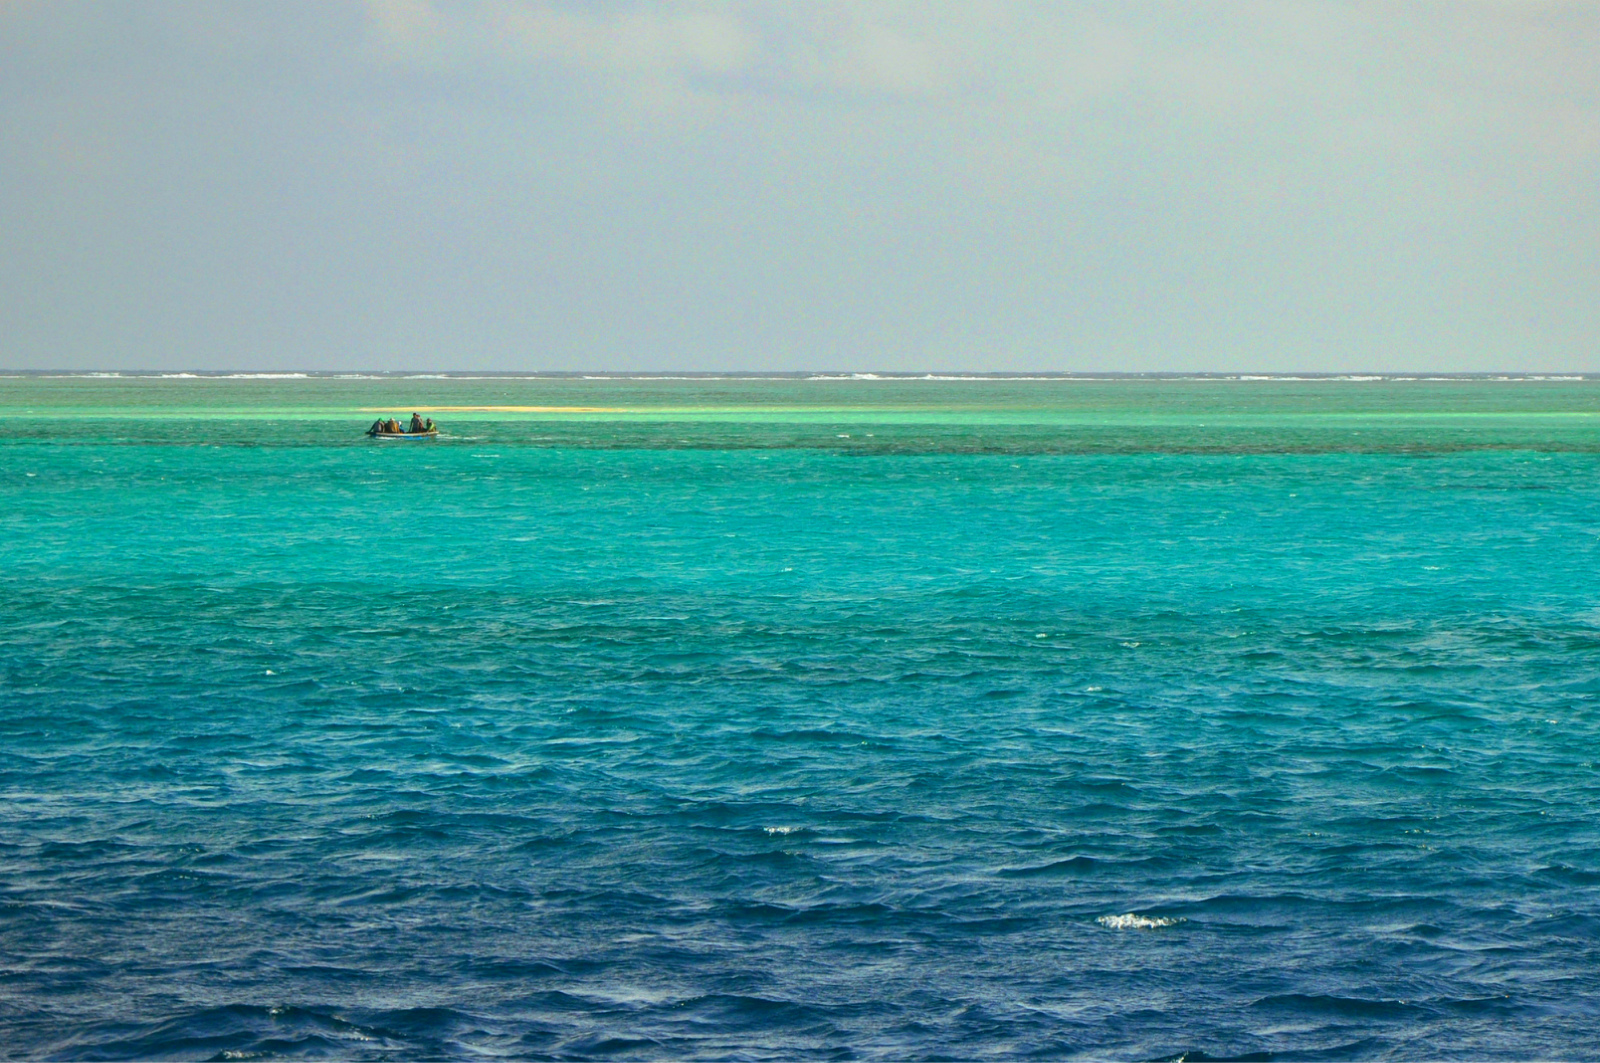 西沙群岛共有岛礁40多个,在南海四大群岛中,西沙群岛露出海面的陆地最